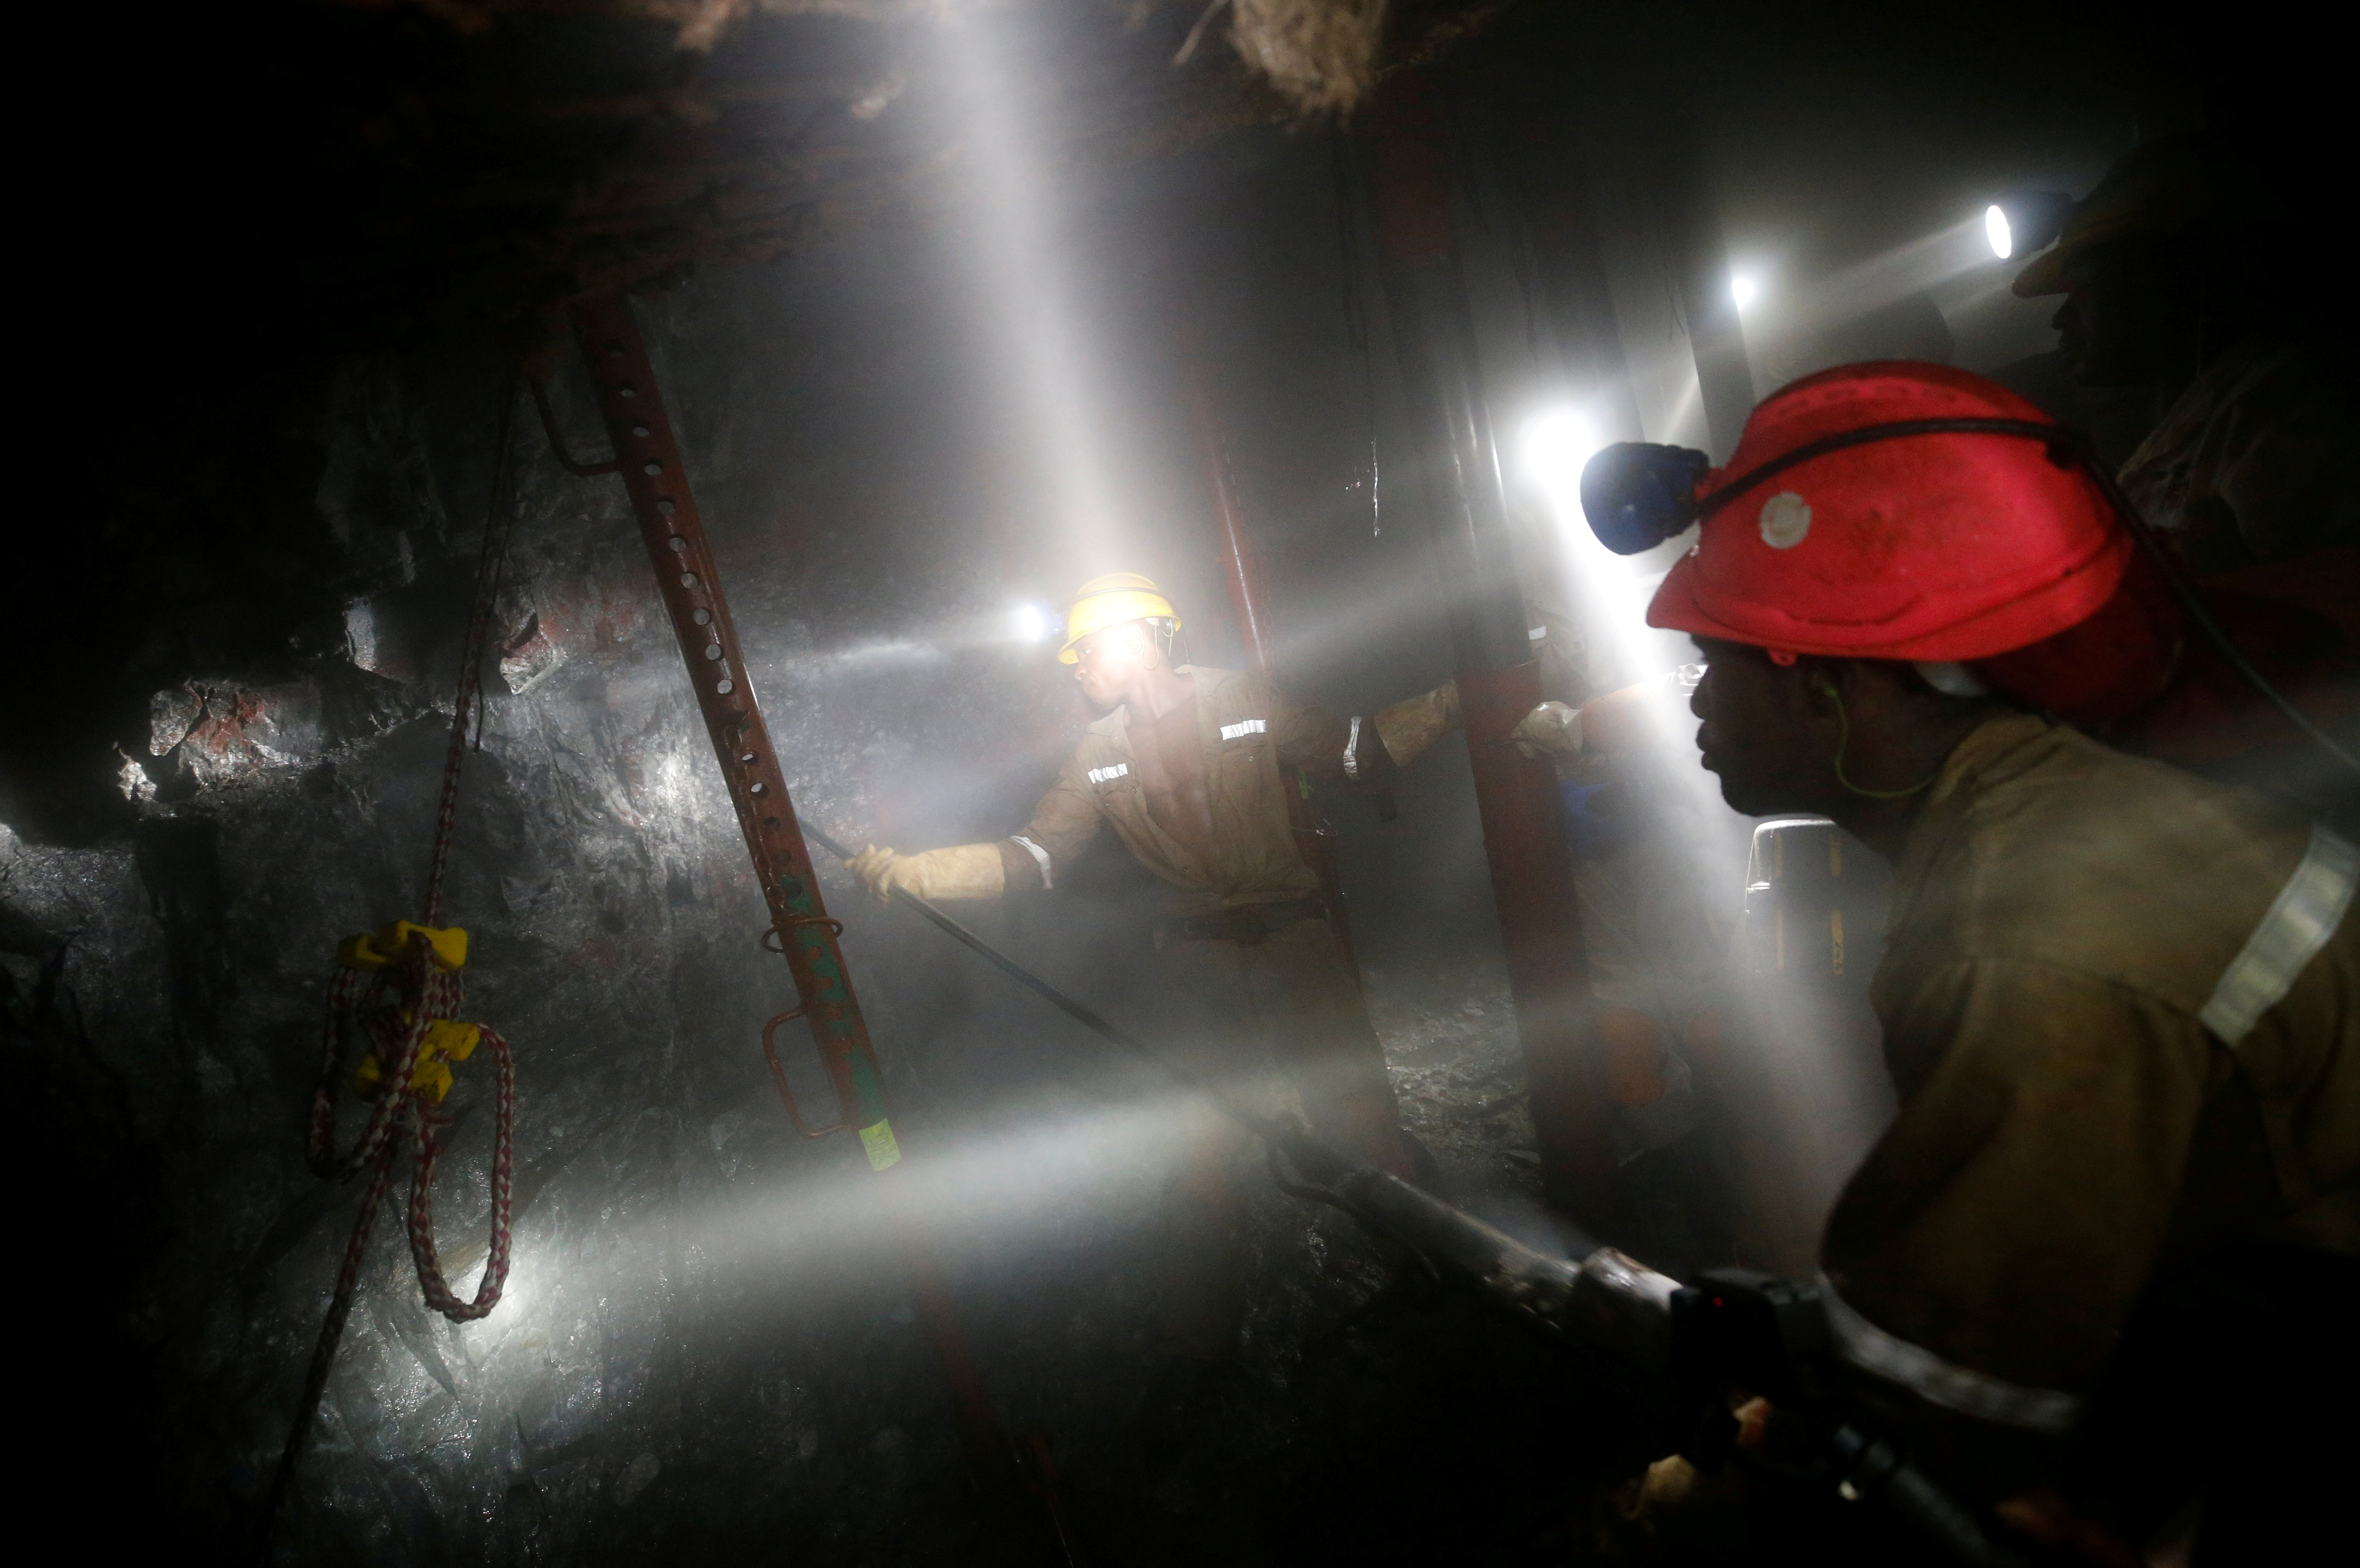 Νότια Αφρική: Νεκροί οι τέσσερις εργαζόμενοι στο χρυσωρυχείο